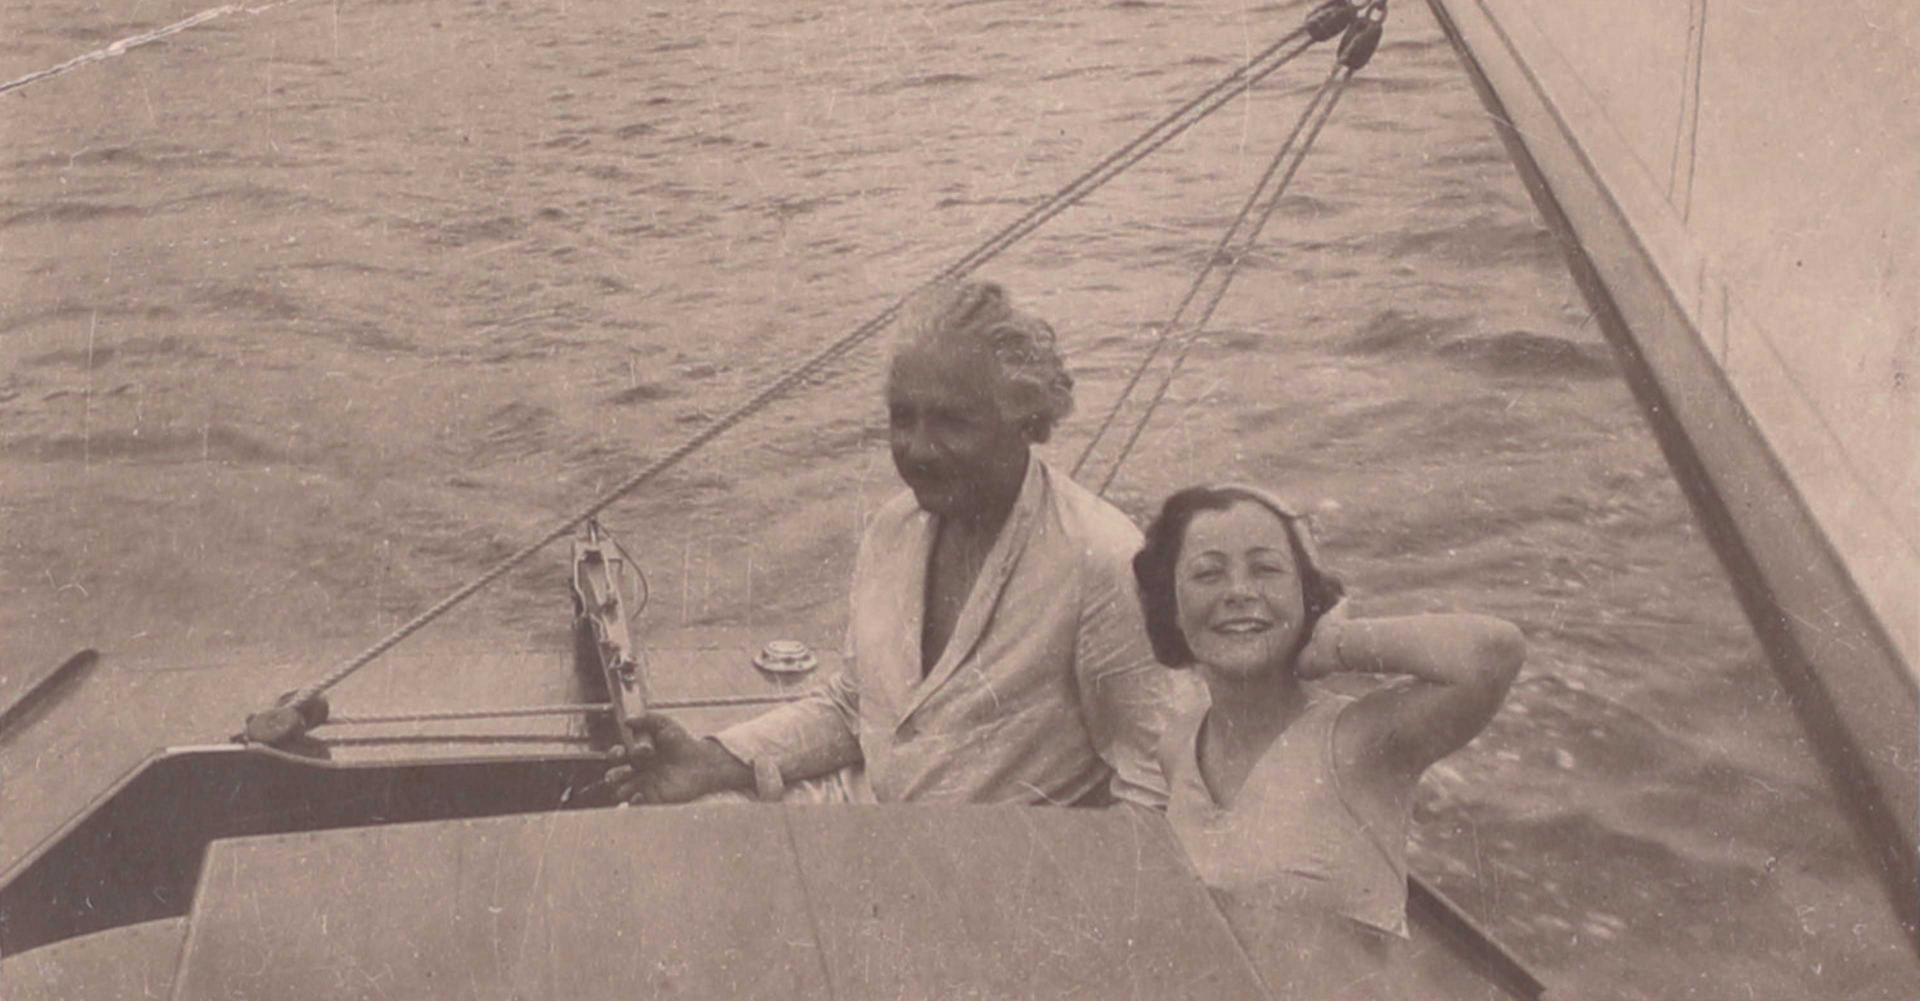 Schwarz-weiß Fotografie von Albert Einstein und einer jungen Frau (Irene Salinger) auf einem Segelboot.